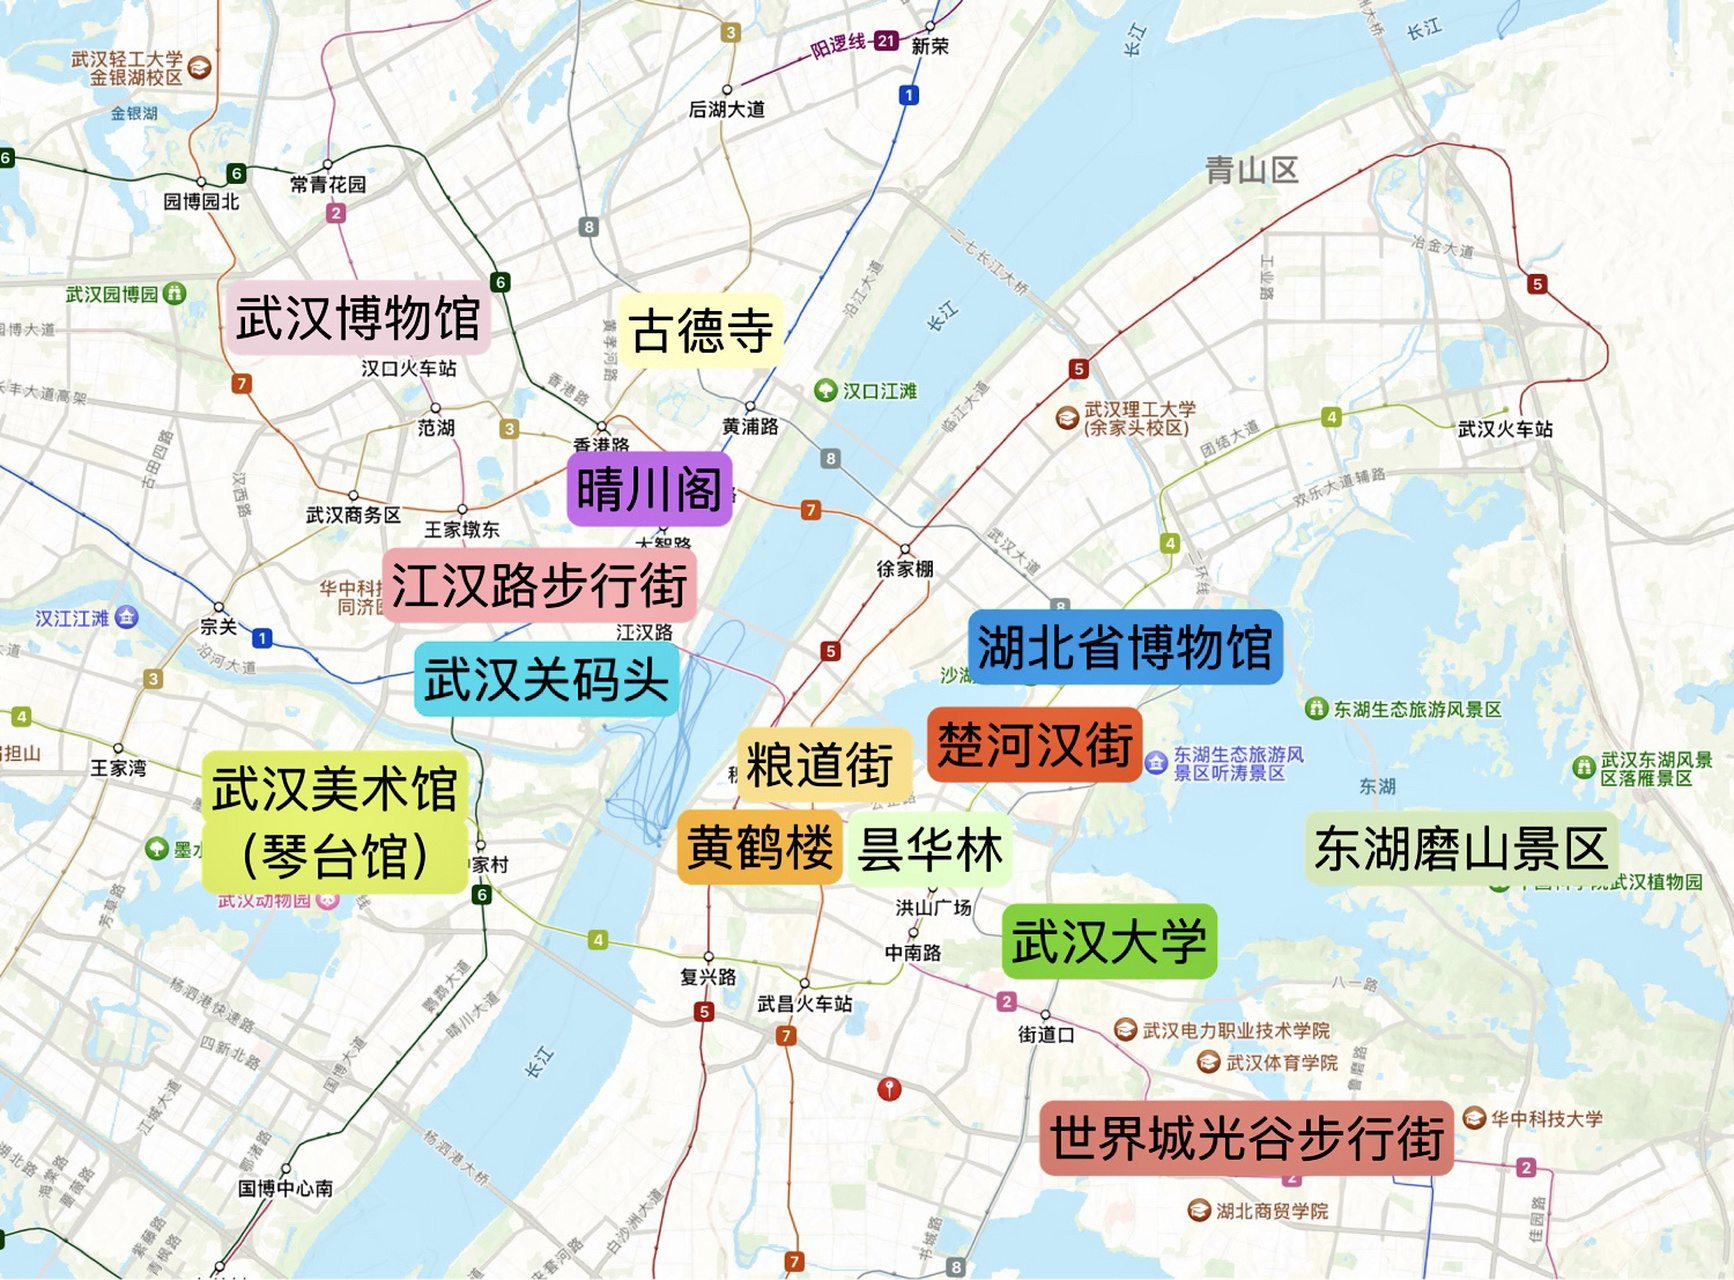 武汉去了两次都没逛遍(含景点地图) 18年的时候第一次去武汉,当时武汉